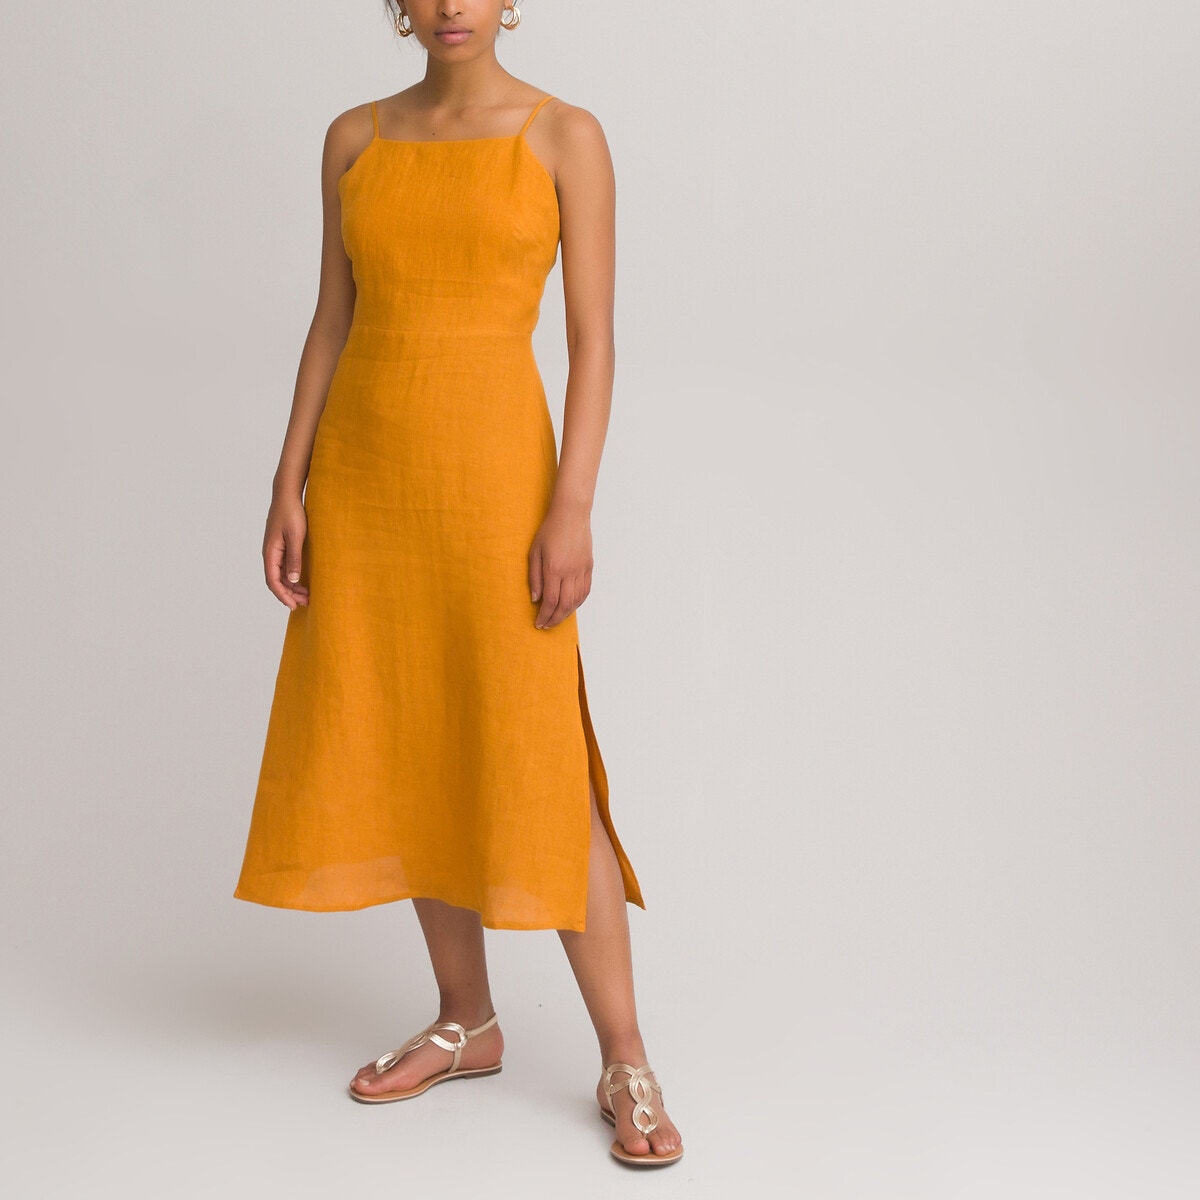 ΓΥΝΑΙΚΑ | Φορέματα | Αμάνικα Λινό φόρεμα με λεπτές τιράντες